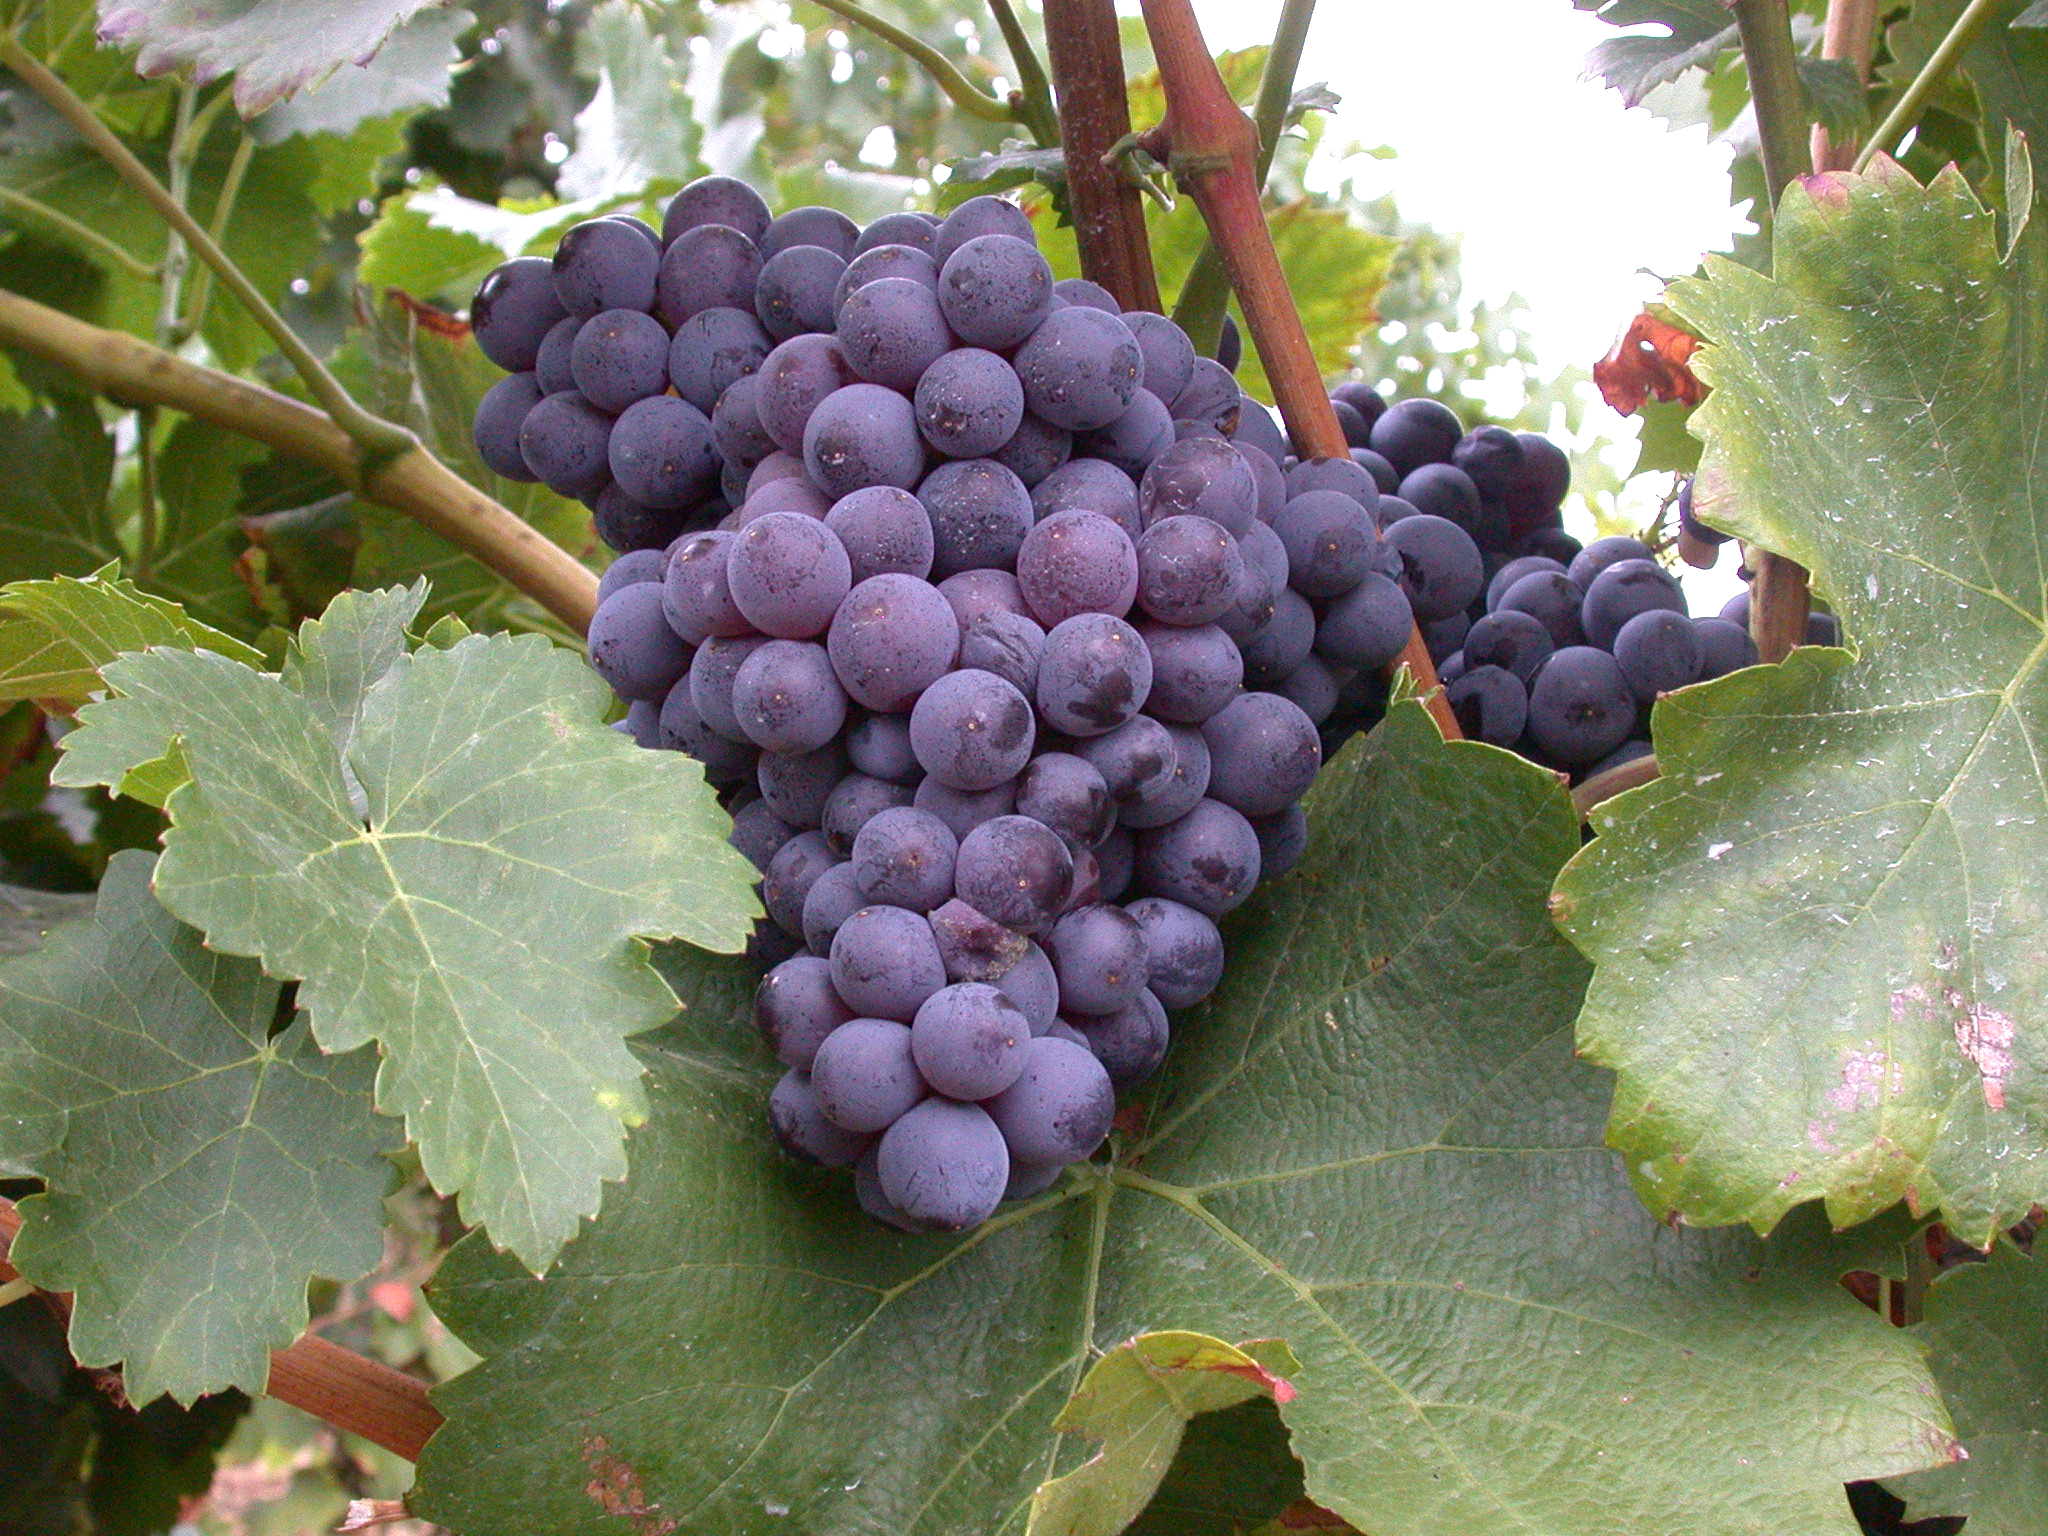 Le resvératrol se formant dans les baies de raisin se retrouve dans le vin. Ici, un grenache noir - © Françoise Dordor – INRA Montpellier